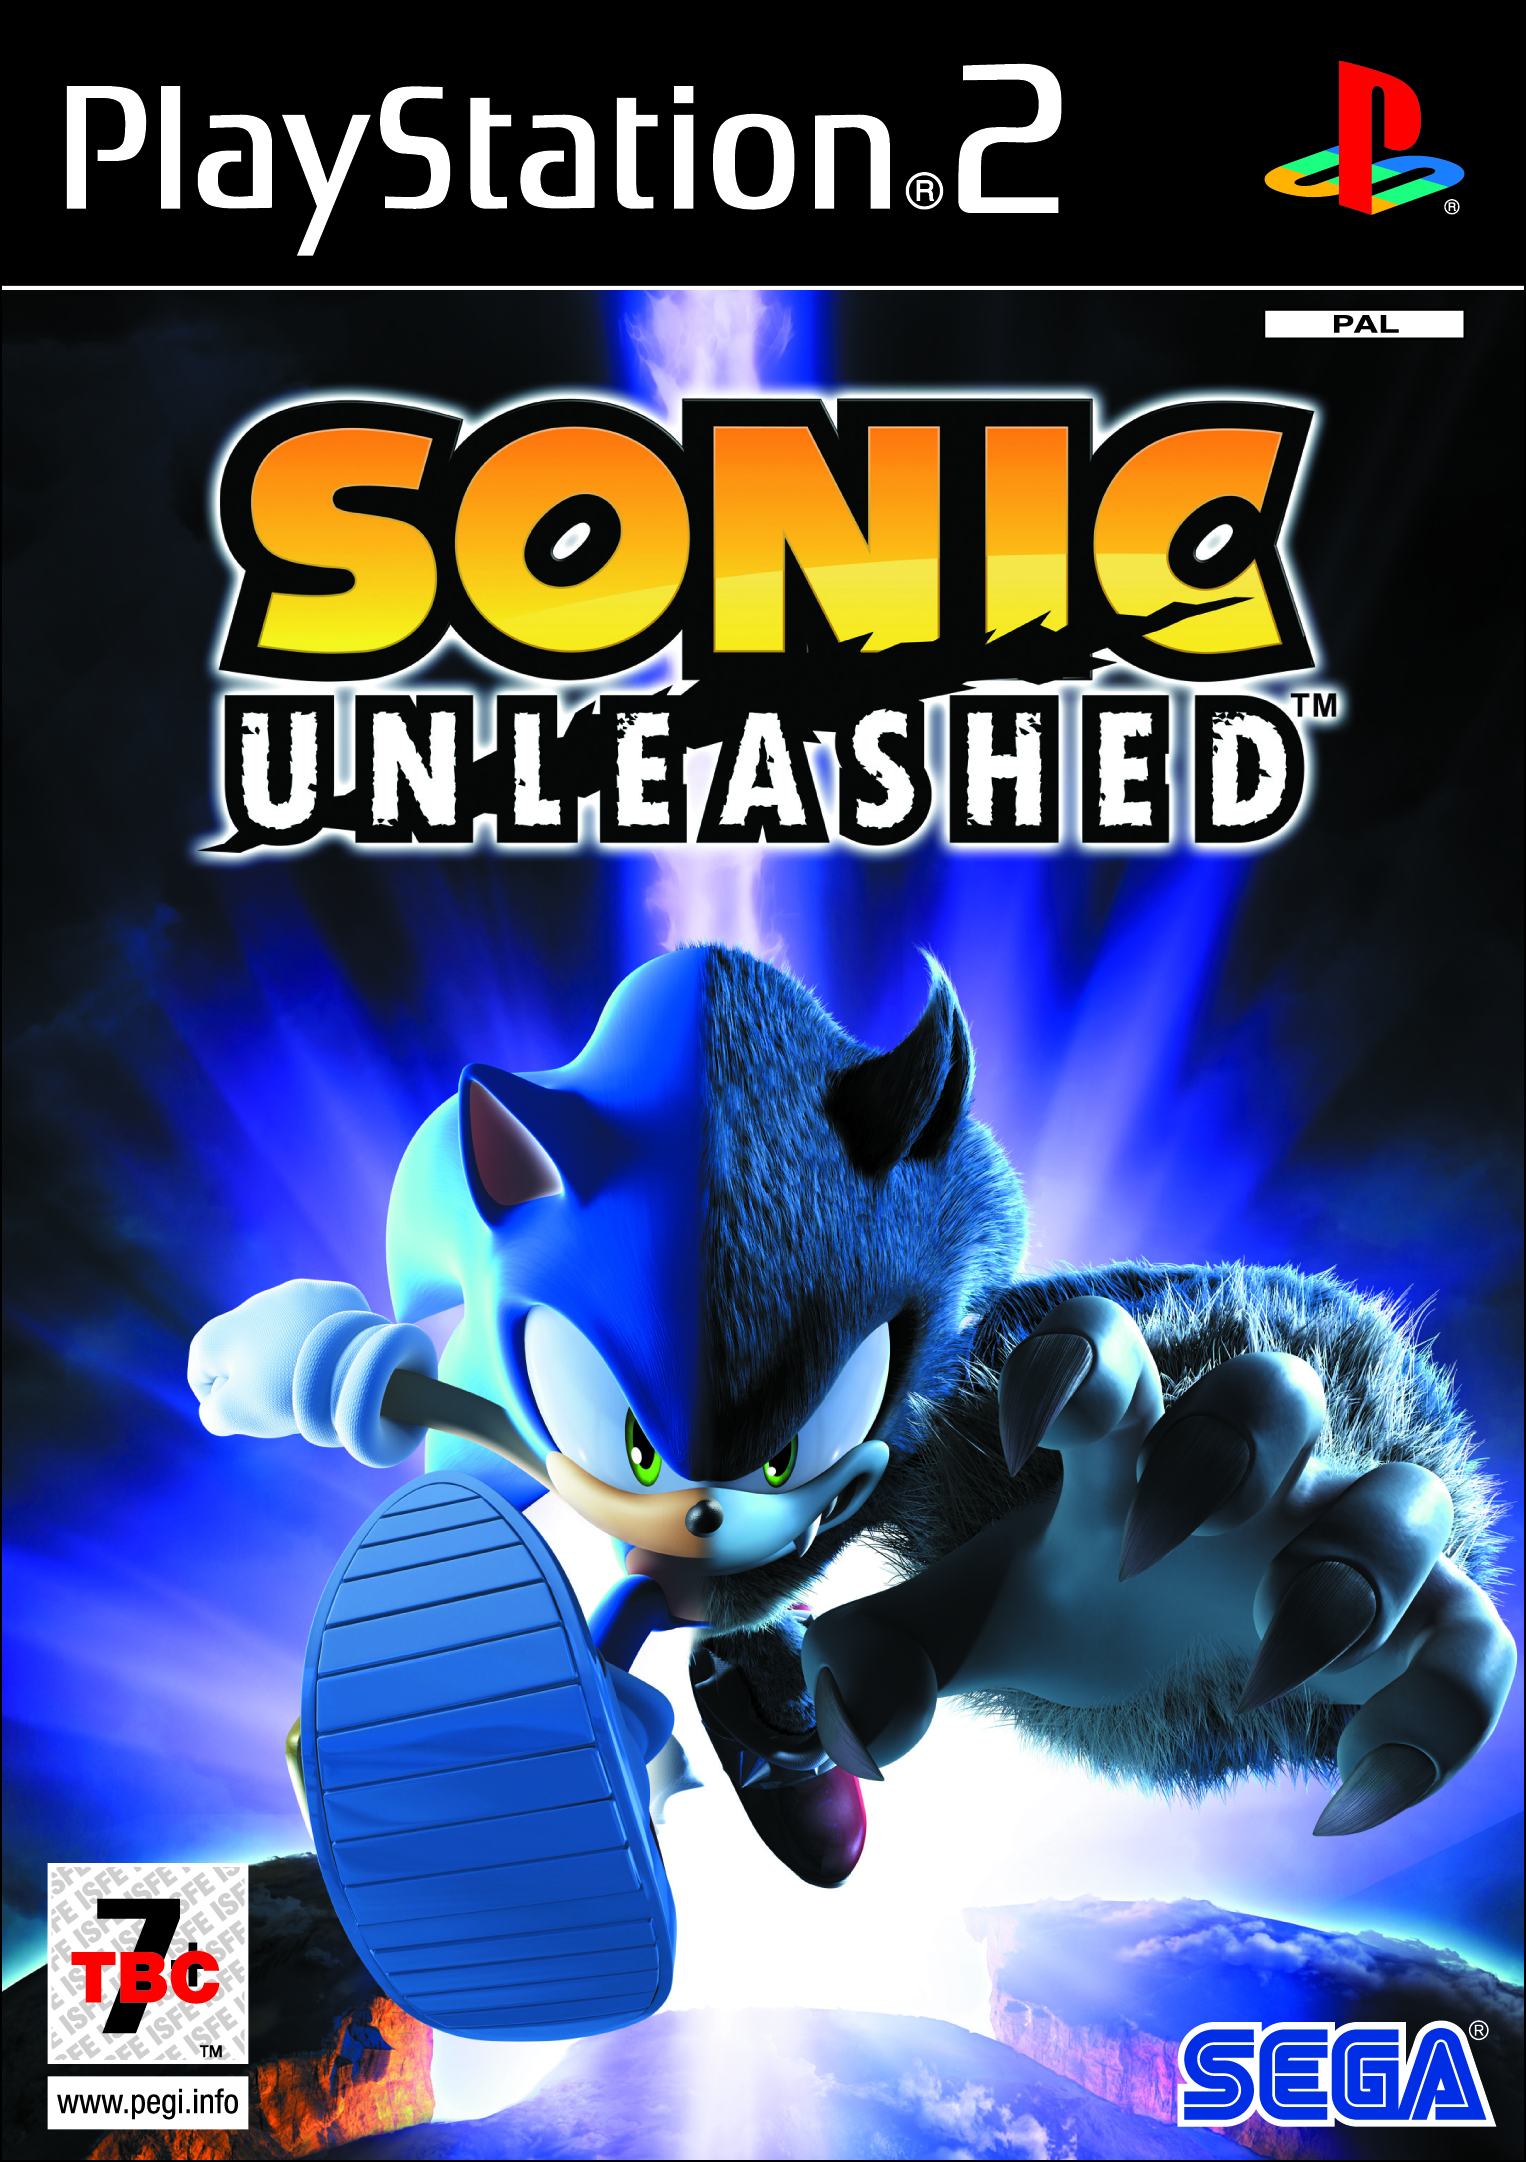 Мобиус анлишед. Sonic unleashed обложка ps3. Sonic unleashed ps2 обложка. Ps2 PLAYSTATION 2 Sonic unleashed. Sonic unleashed ps3 диск.